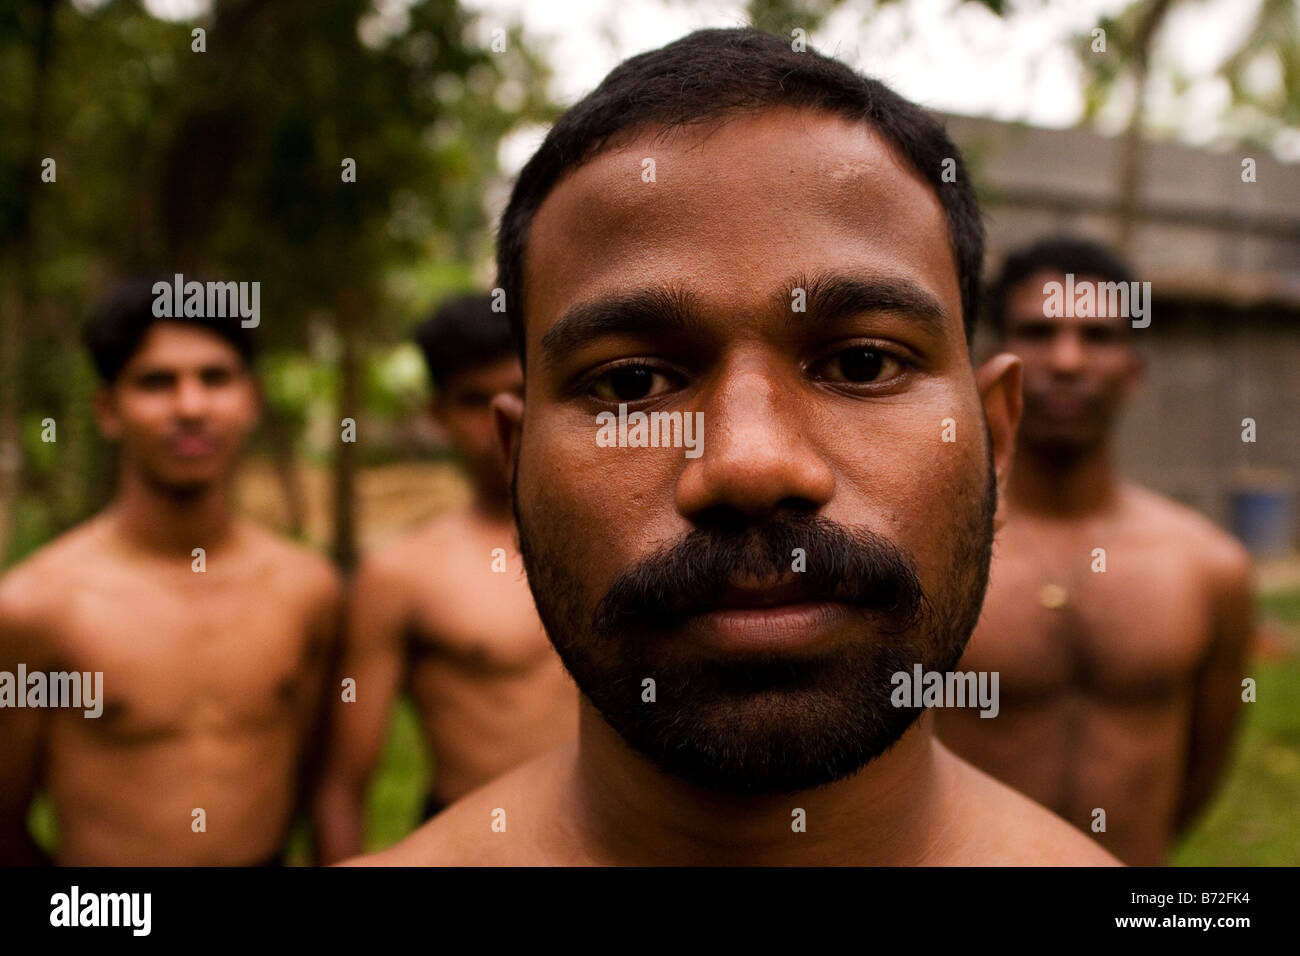 A proponent of Kalarippayattu in Ernakulam, in Kerala, India. Kalarippayattu is a form of martial art. Stock Photo